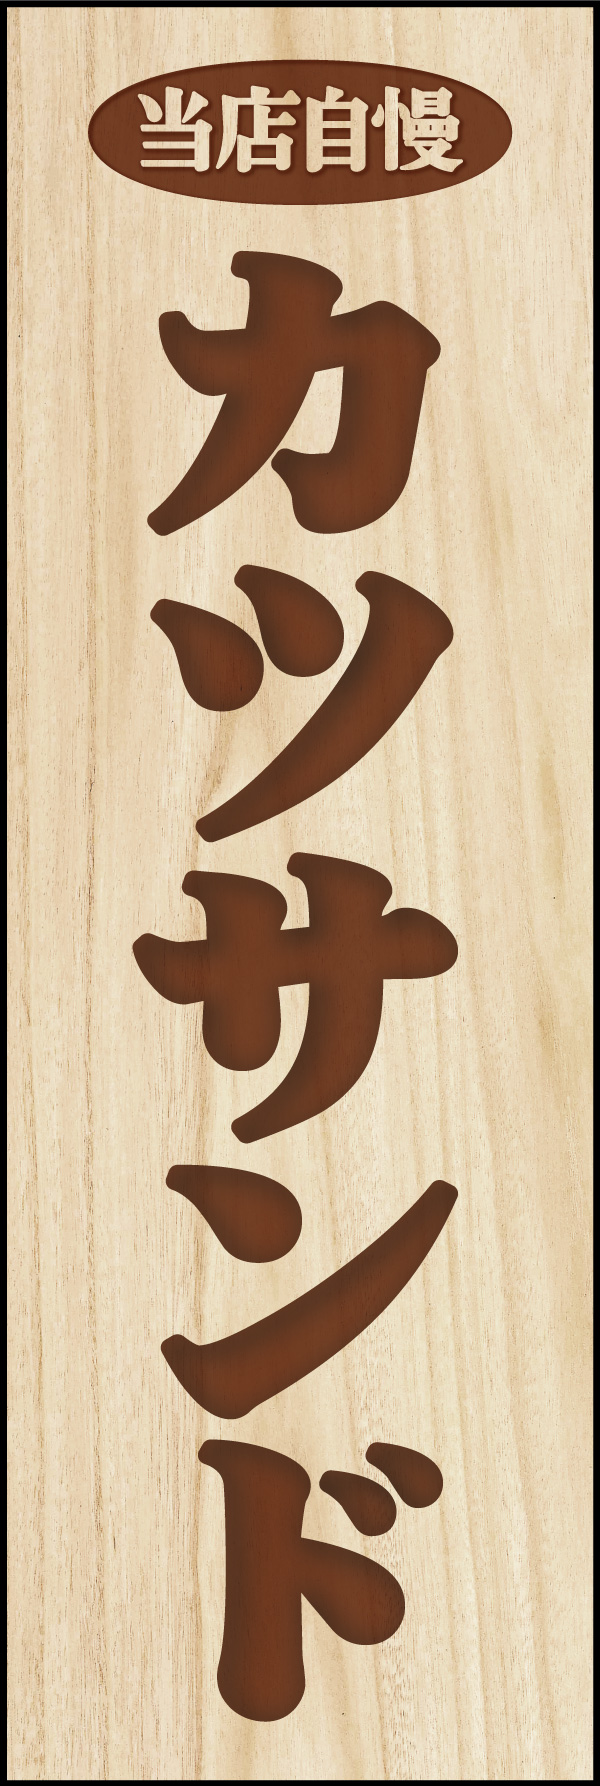 カツサンド 03「カツサンド」ののぼりです。木彫りの札をイメージしたデザインにしました。(Y.M) 